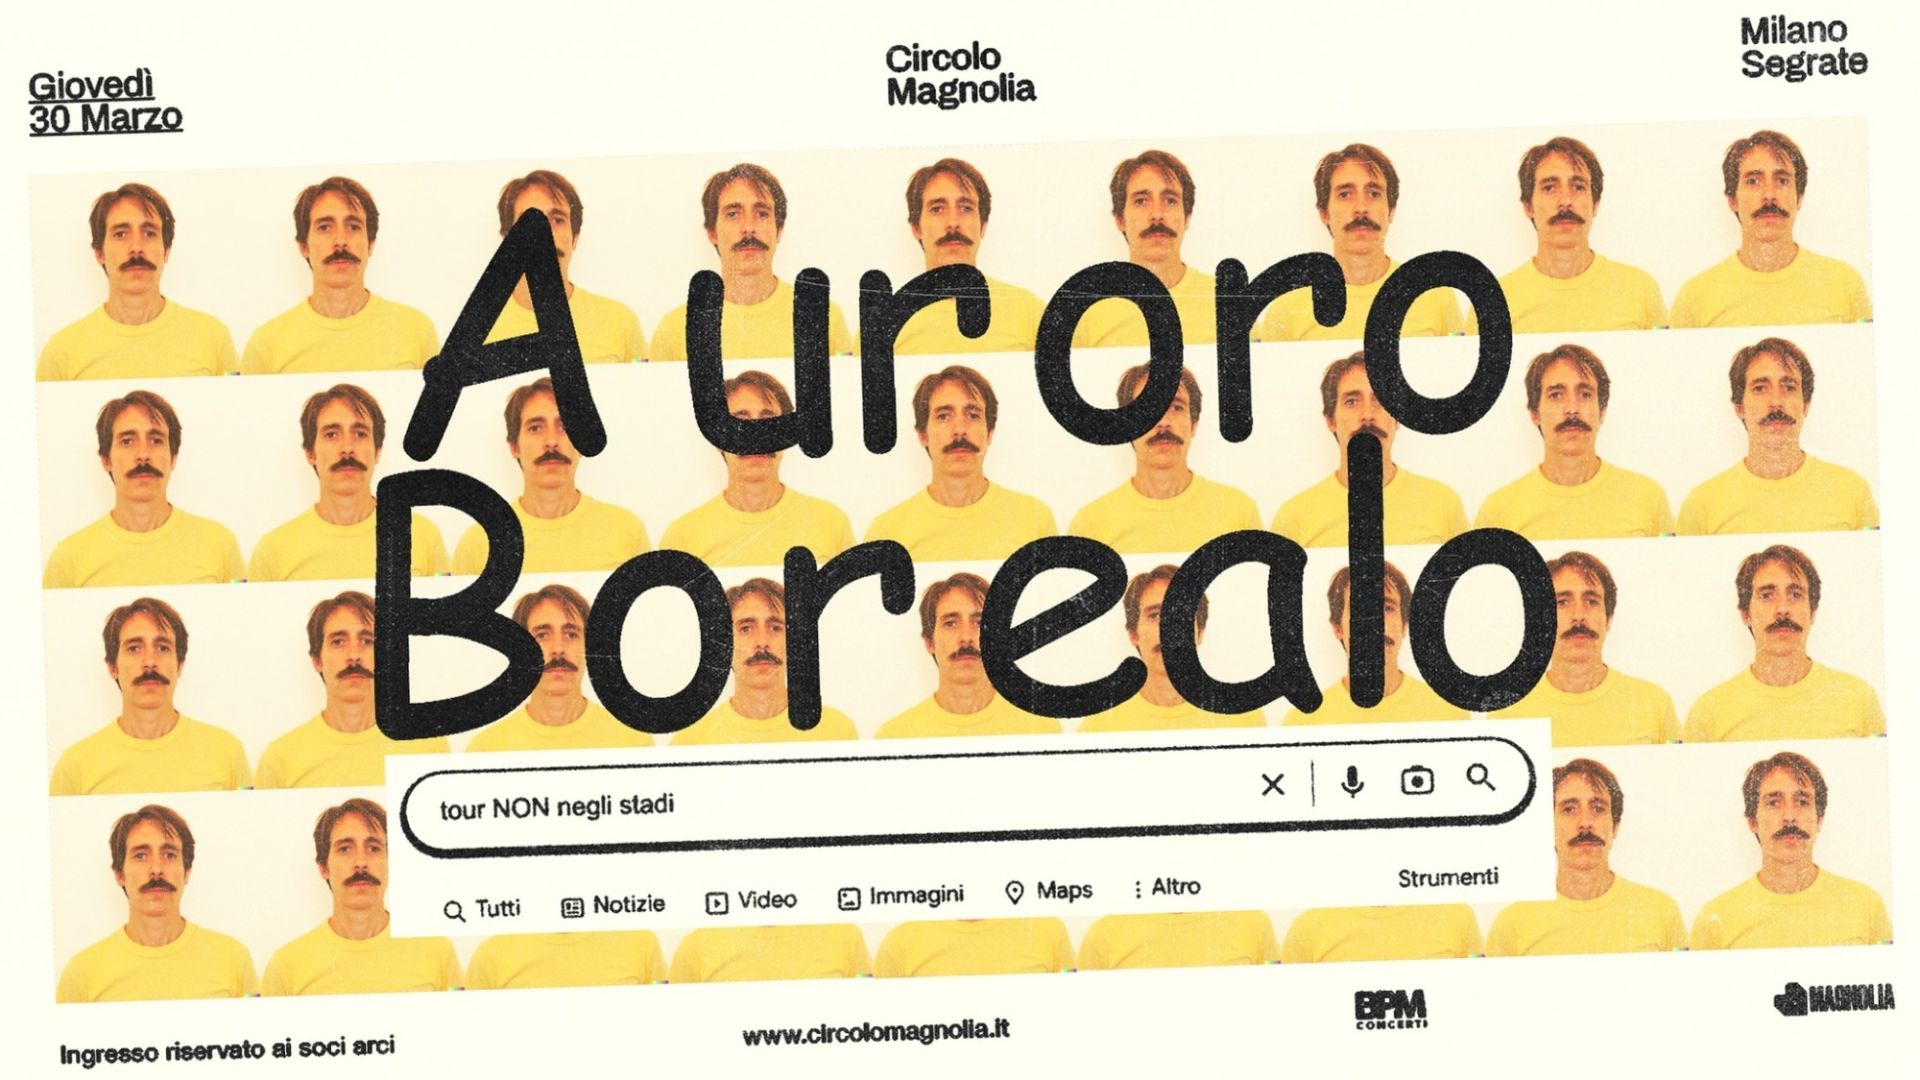 Auroro Borealo • "Tour Non negli stadi"